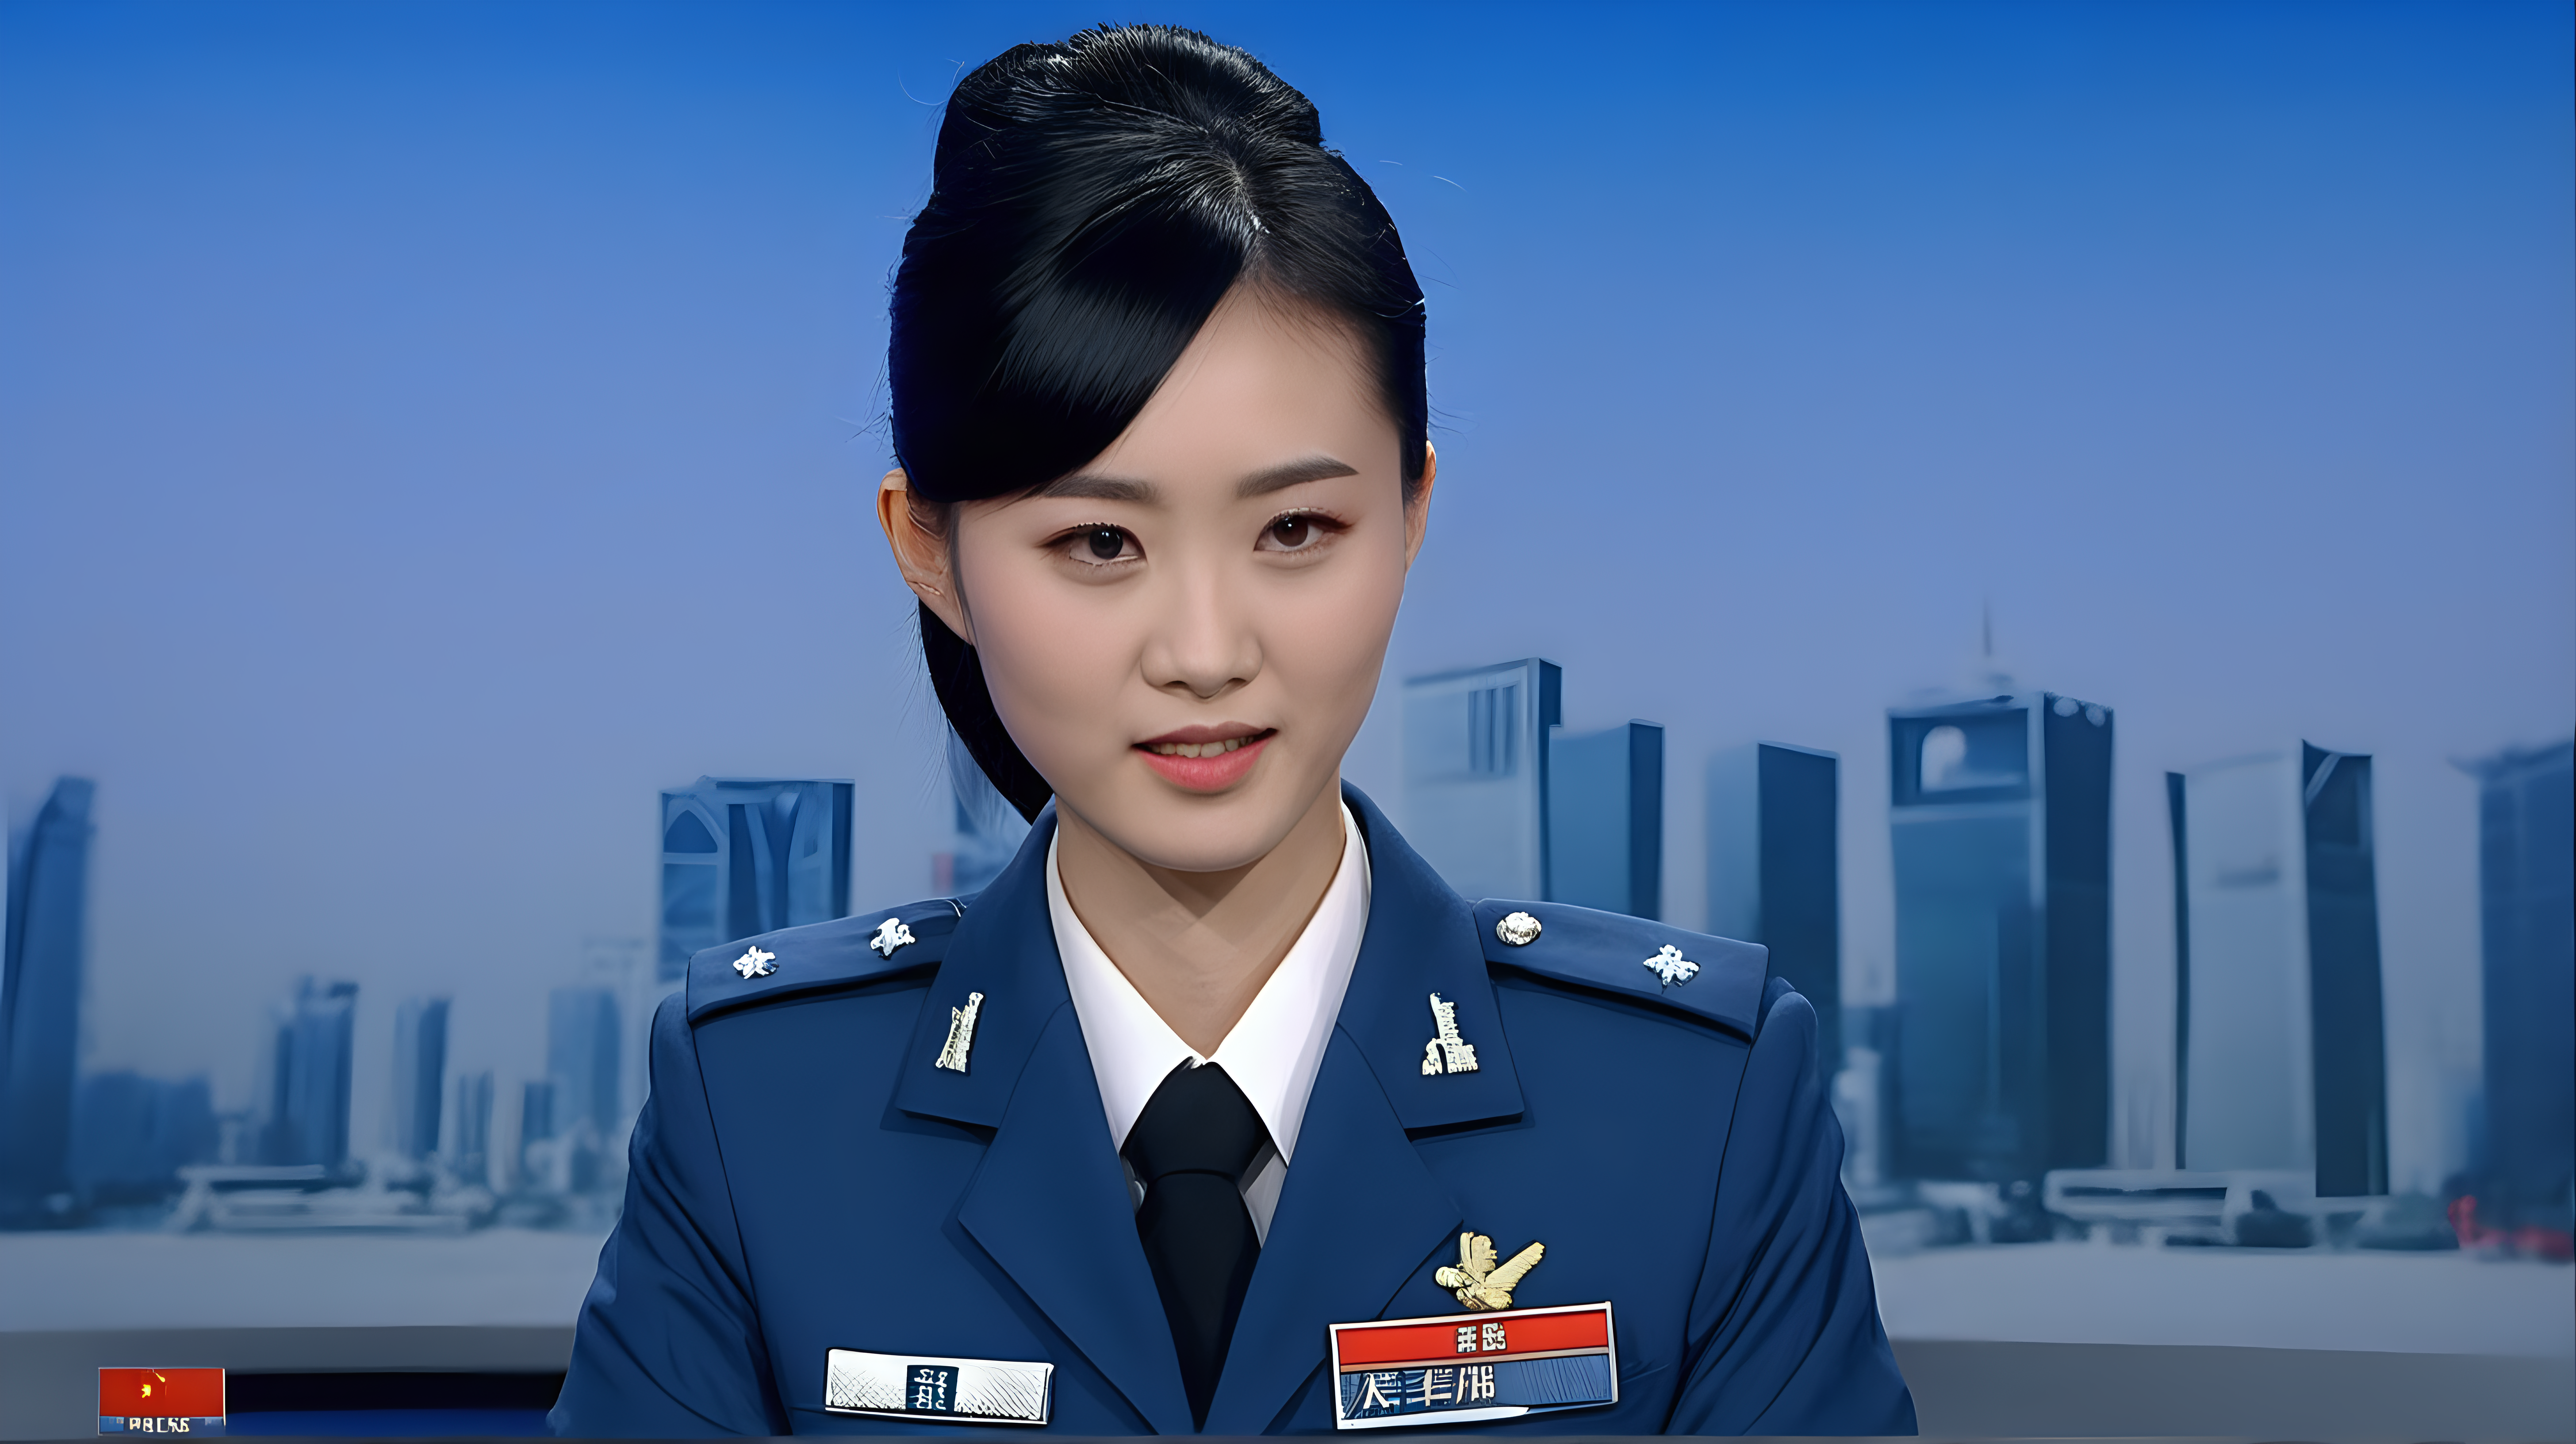 一名中国青年空军女兵
黑发
主持新闻